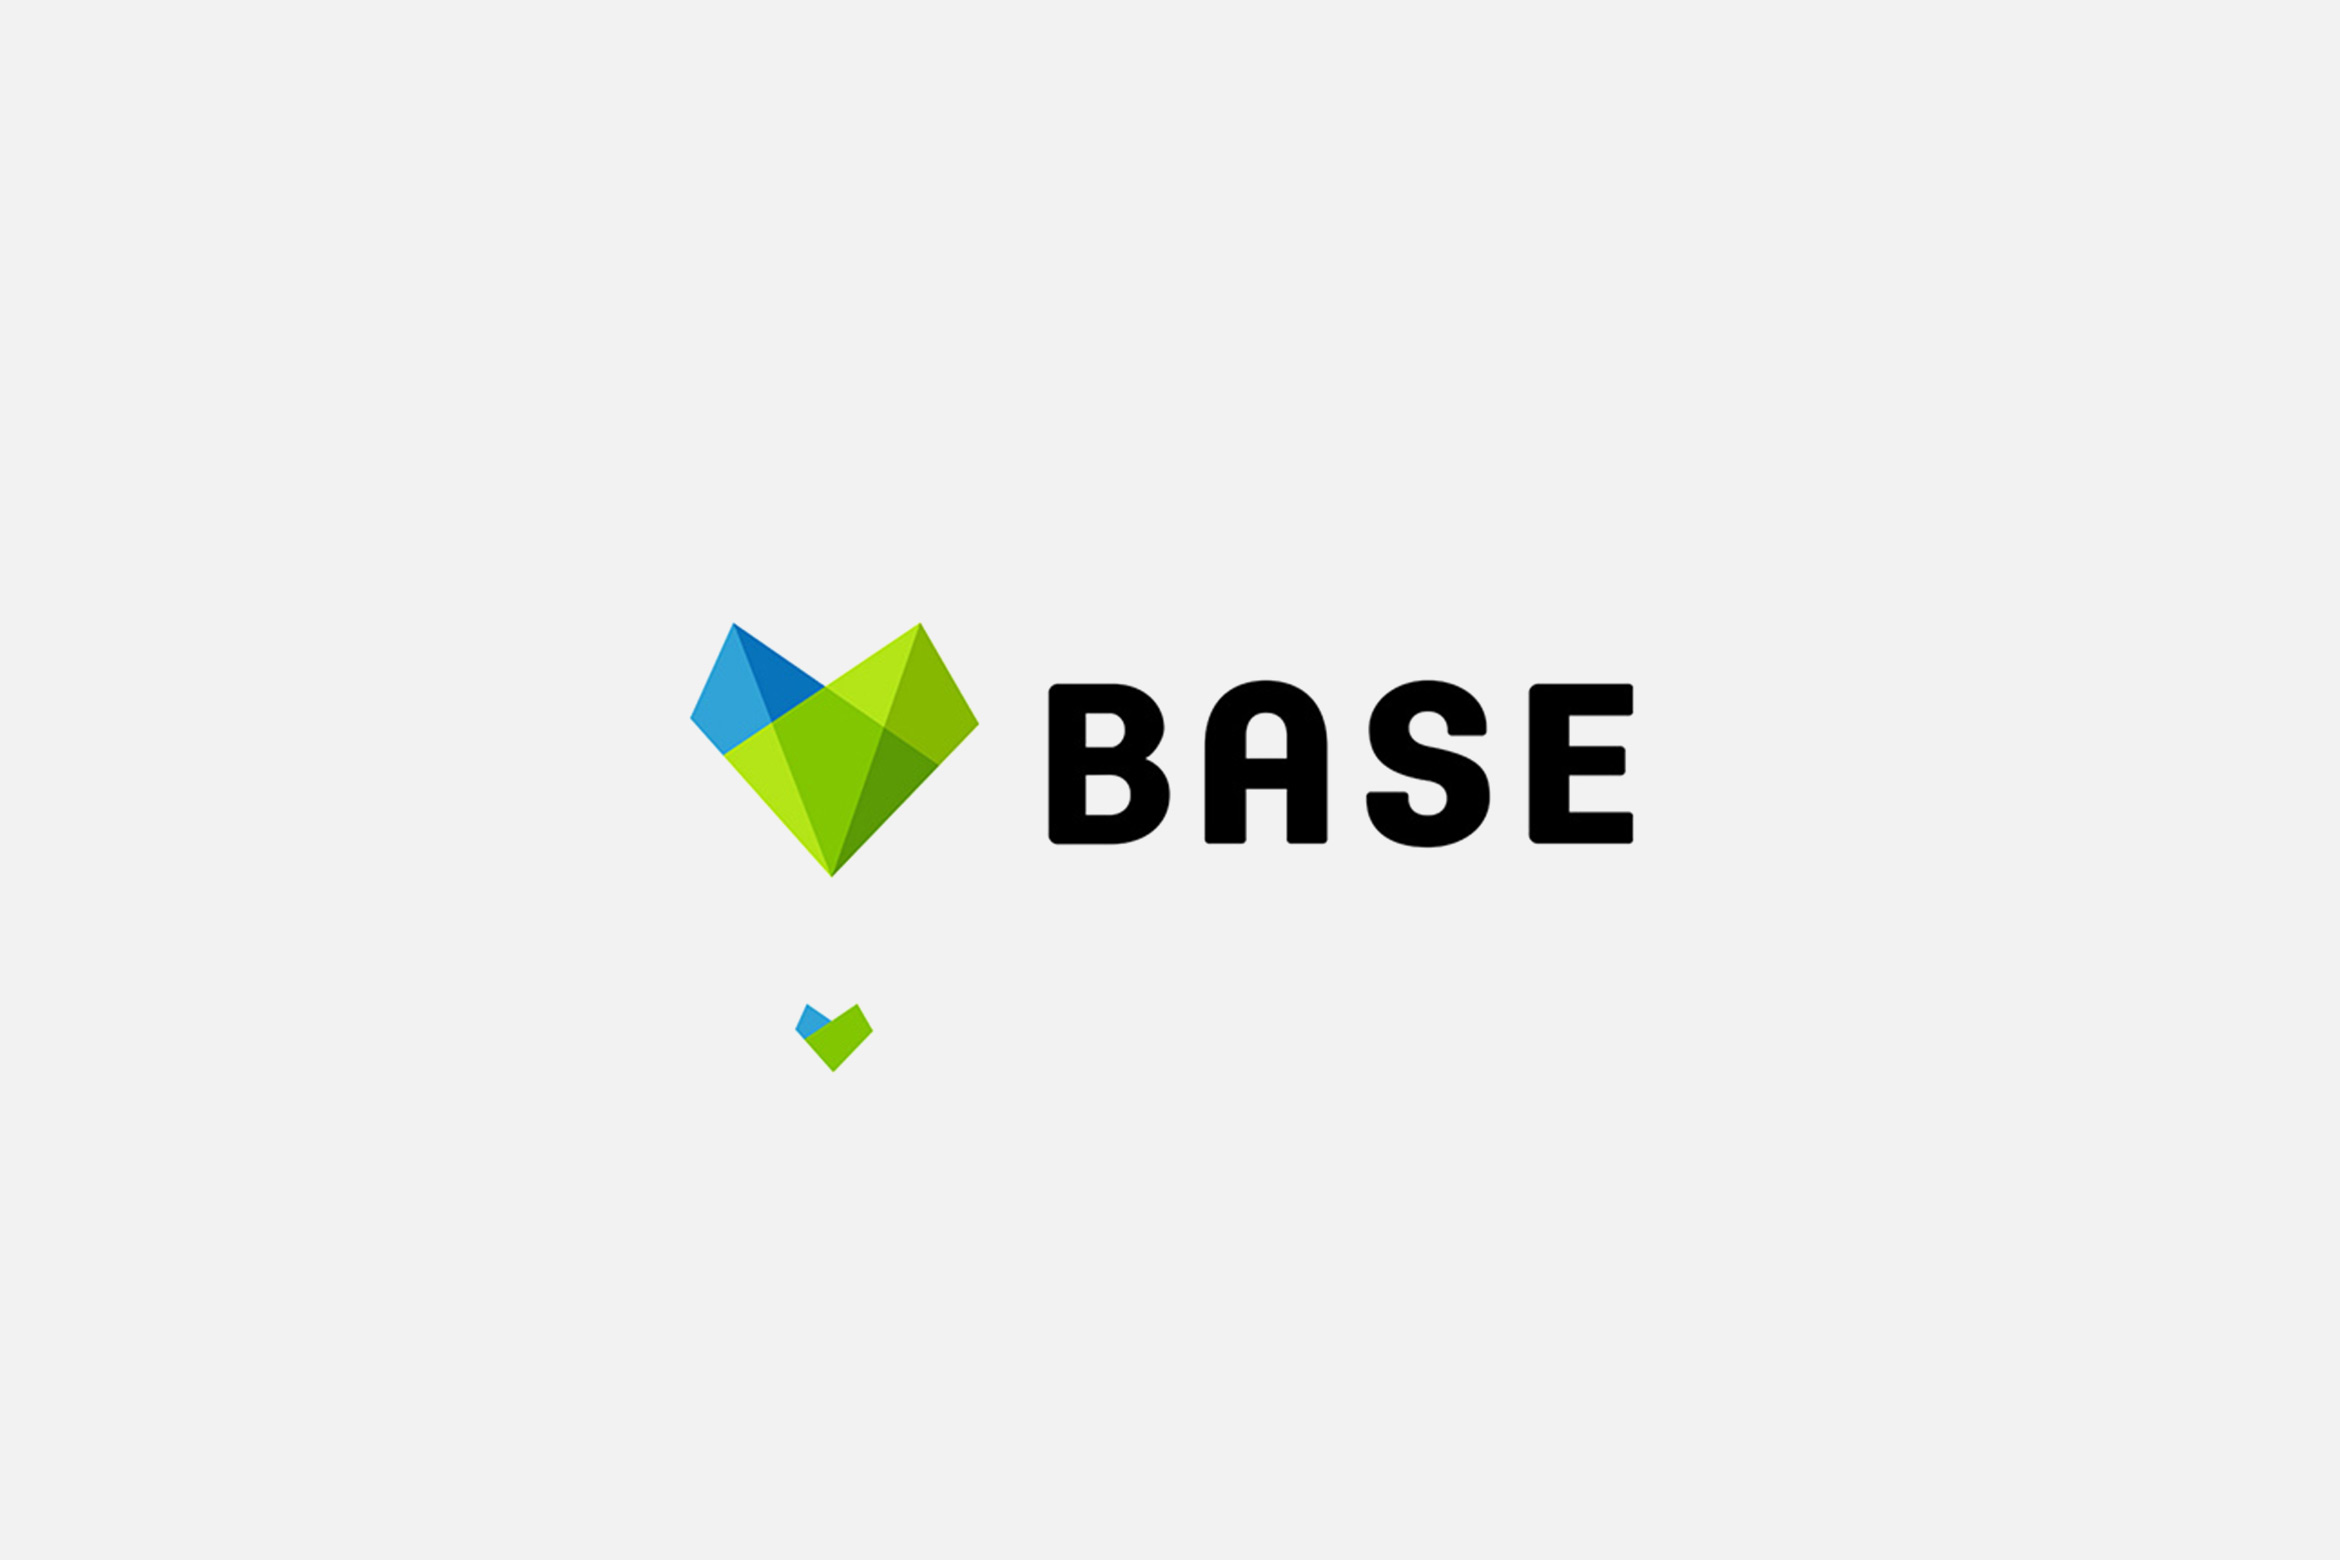 BASE branding & identity